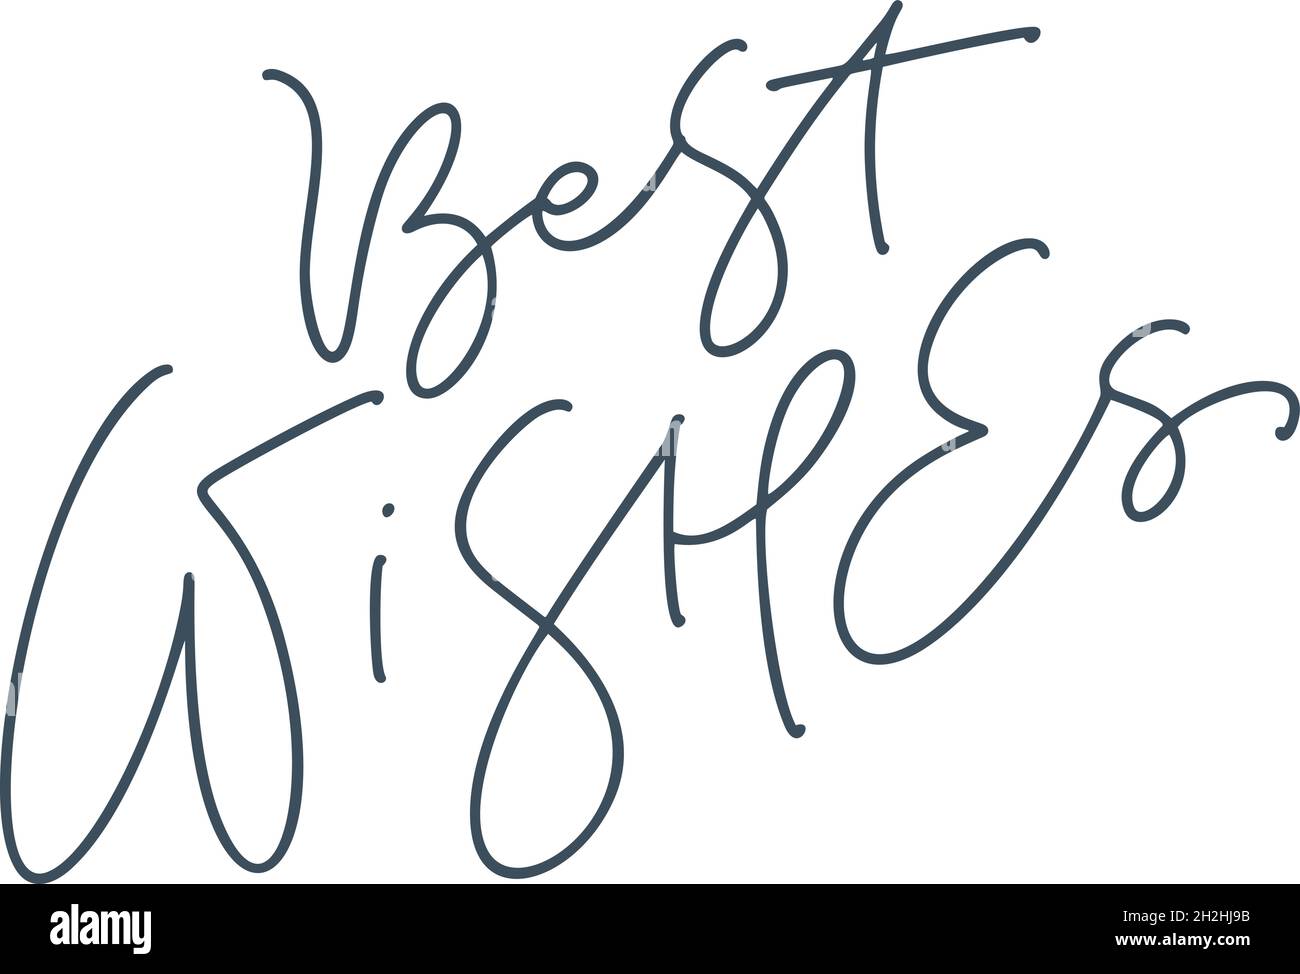 Best Wisher Vektor Weihnachten handgezeichnete Schrift monoline Kalligraphie Text isoliert auf weißem Hintergrund. Text für Karteneinladungen, Vorlagen. Lager Stock Vektor